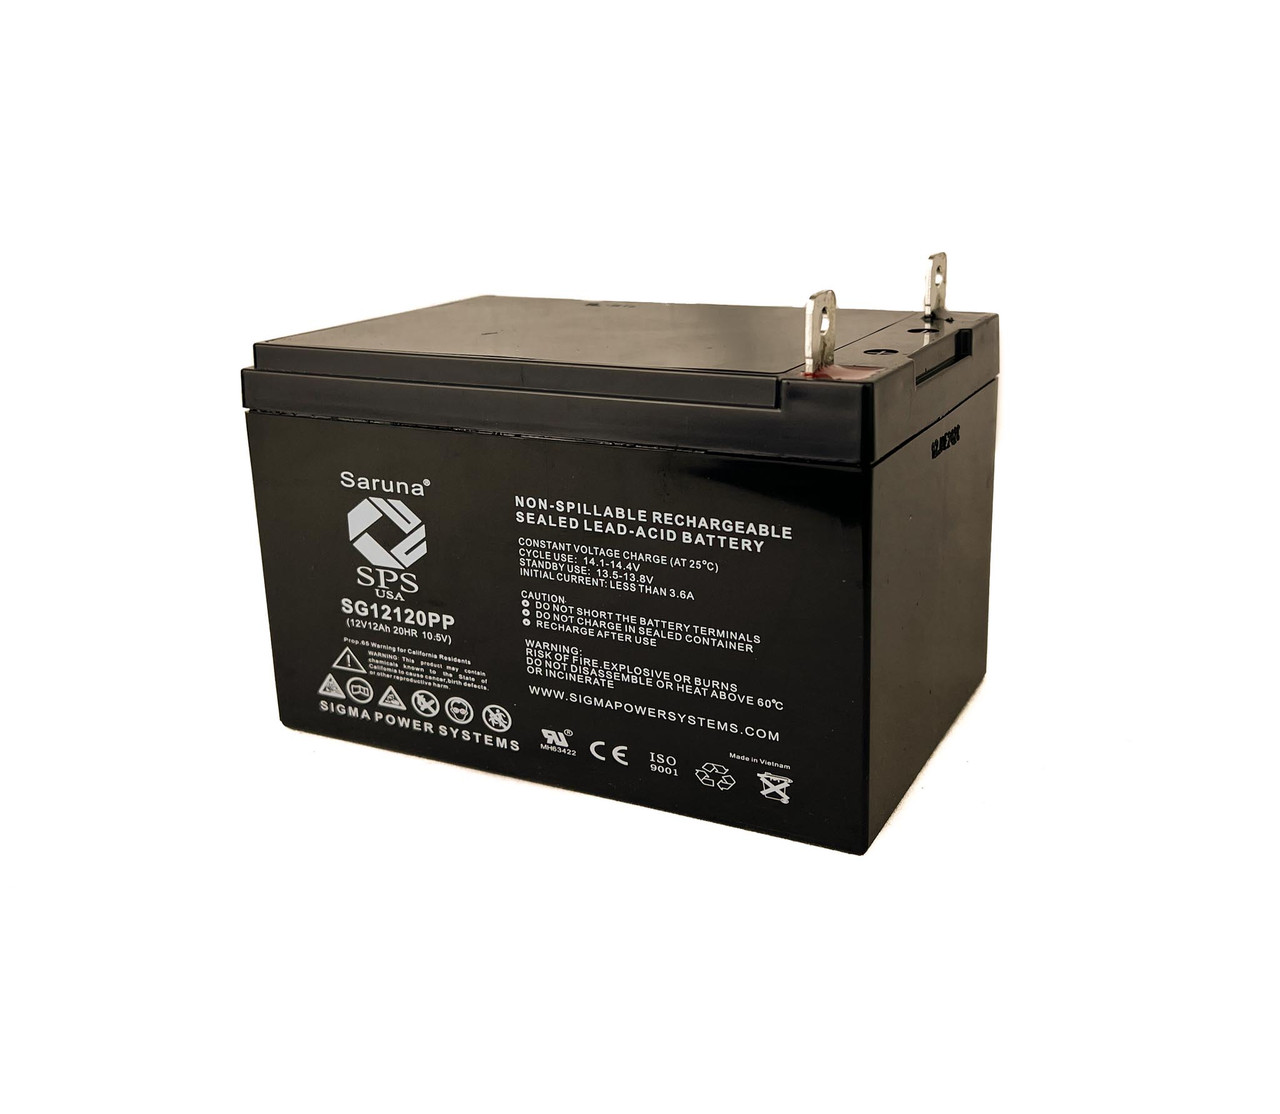 Raion Power RG12120PP Replacement Battery for Cal-Van Tools Cal 558 900 Peak Amps Mini